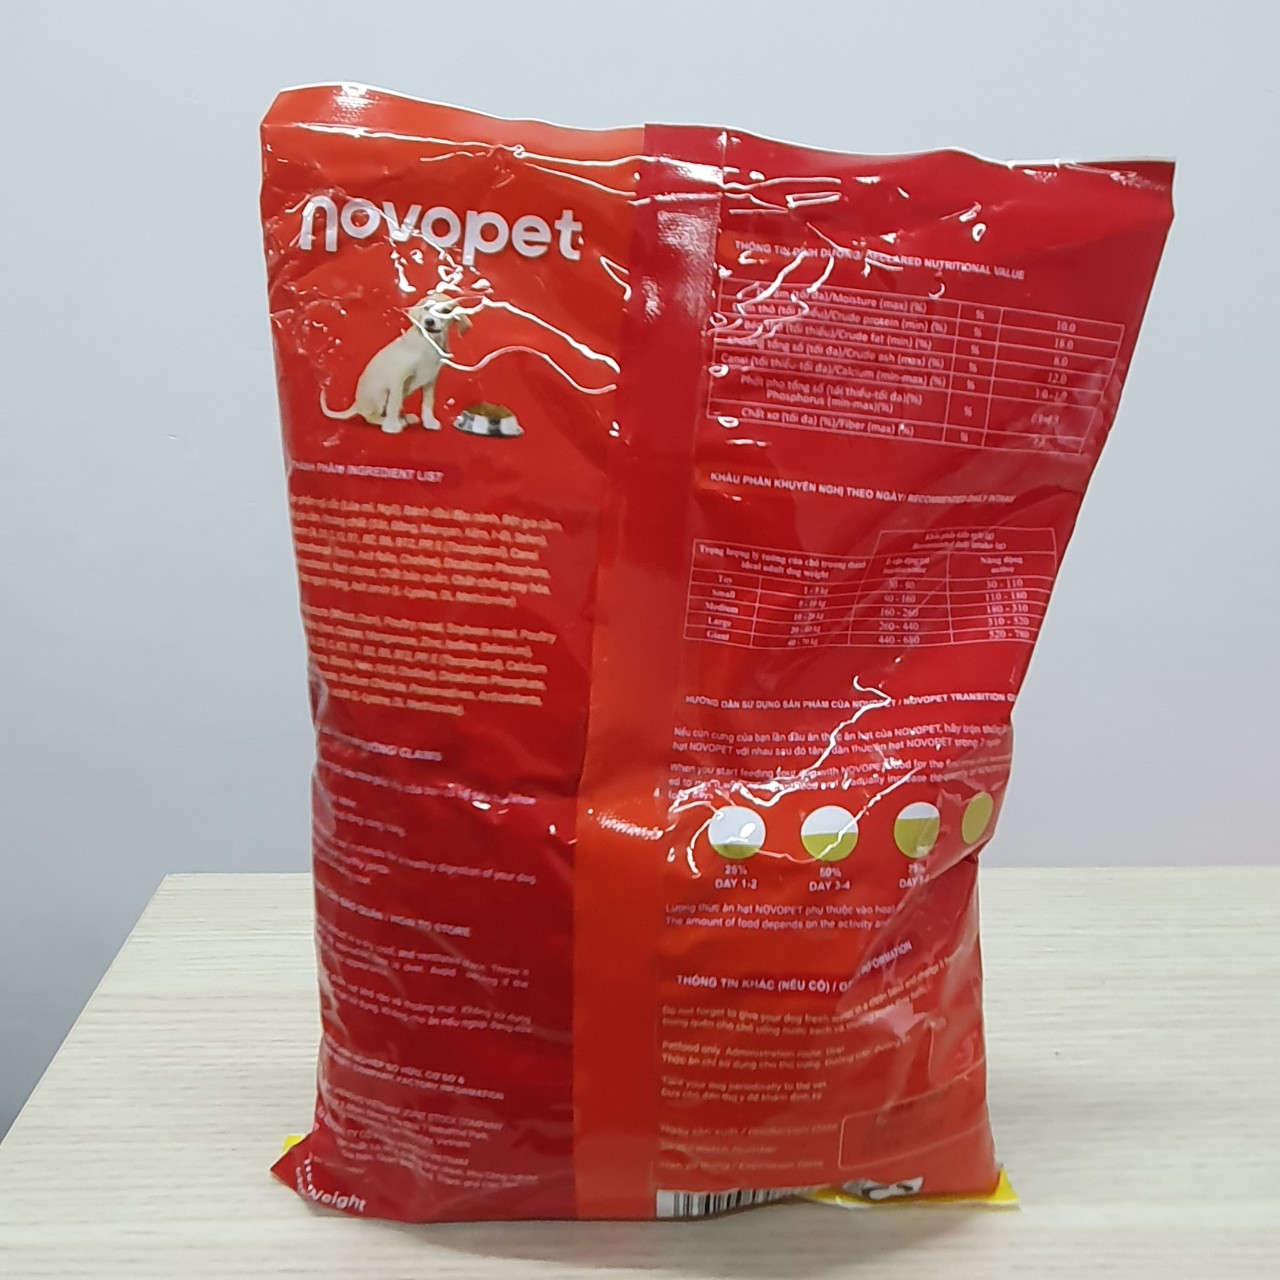 Thức ăn hạt NOVOPET cho chó trưởng thành vị hỗn hợp gói 400g